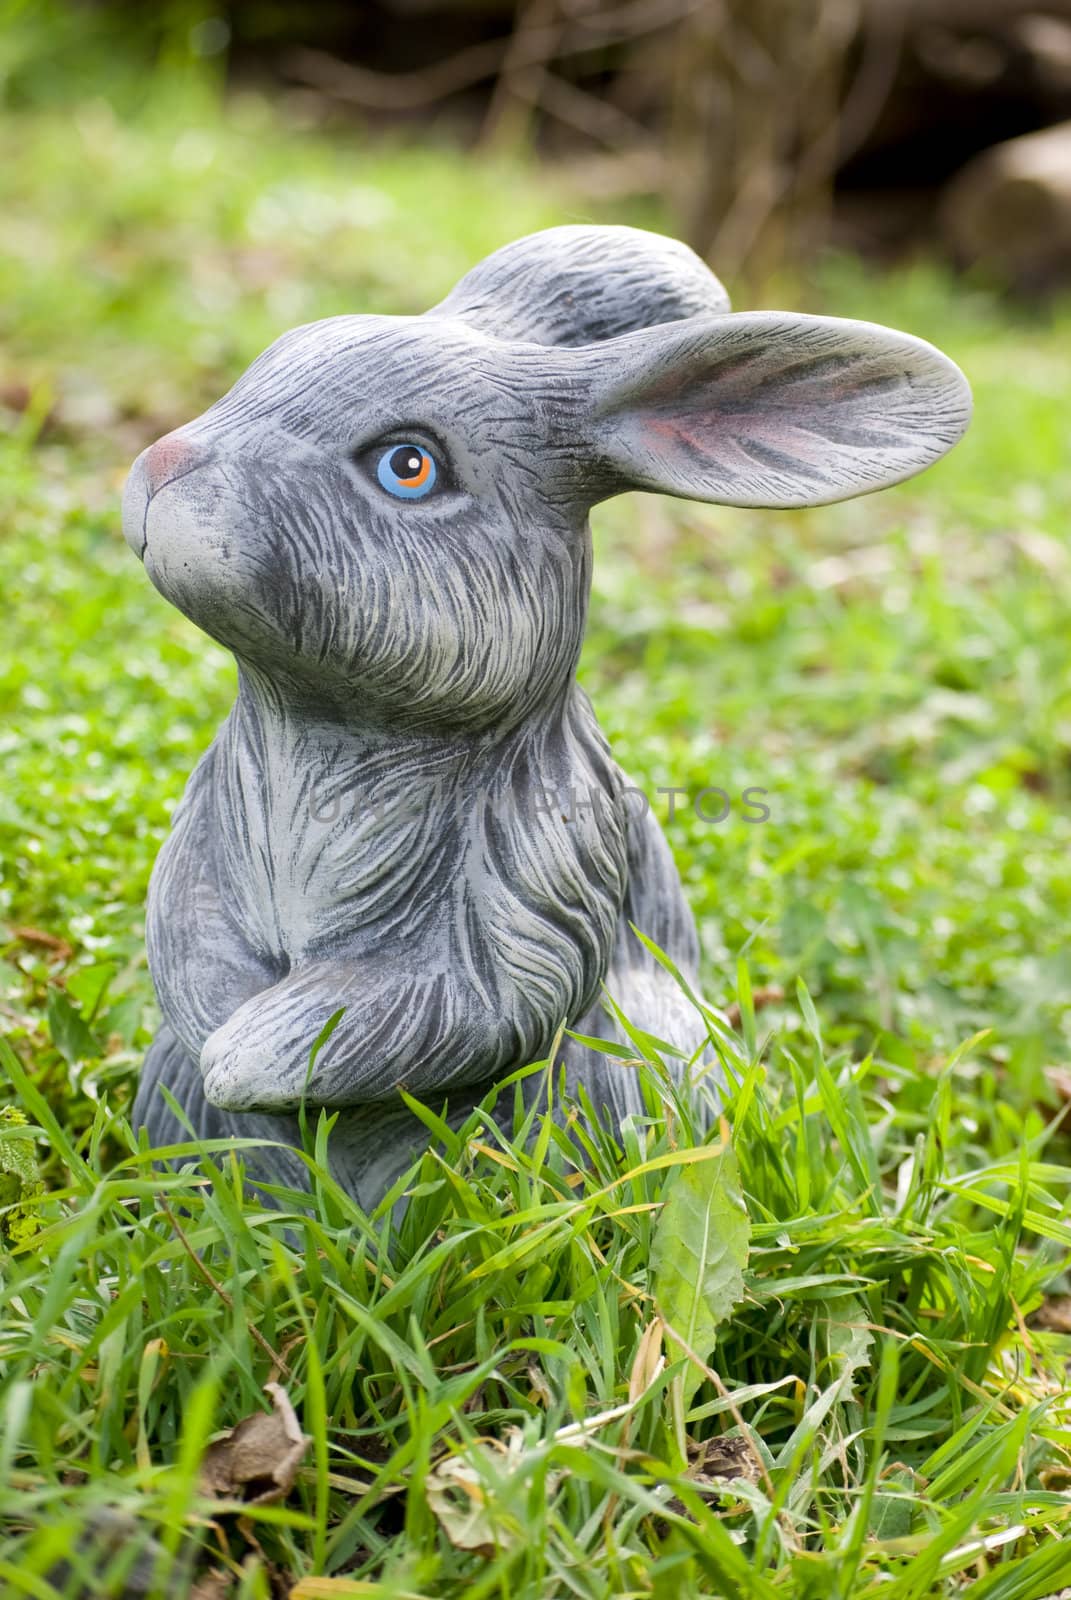 rabbit statue on green grass backgound